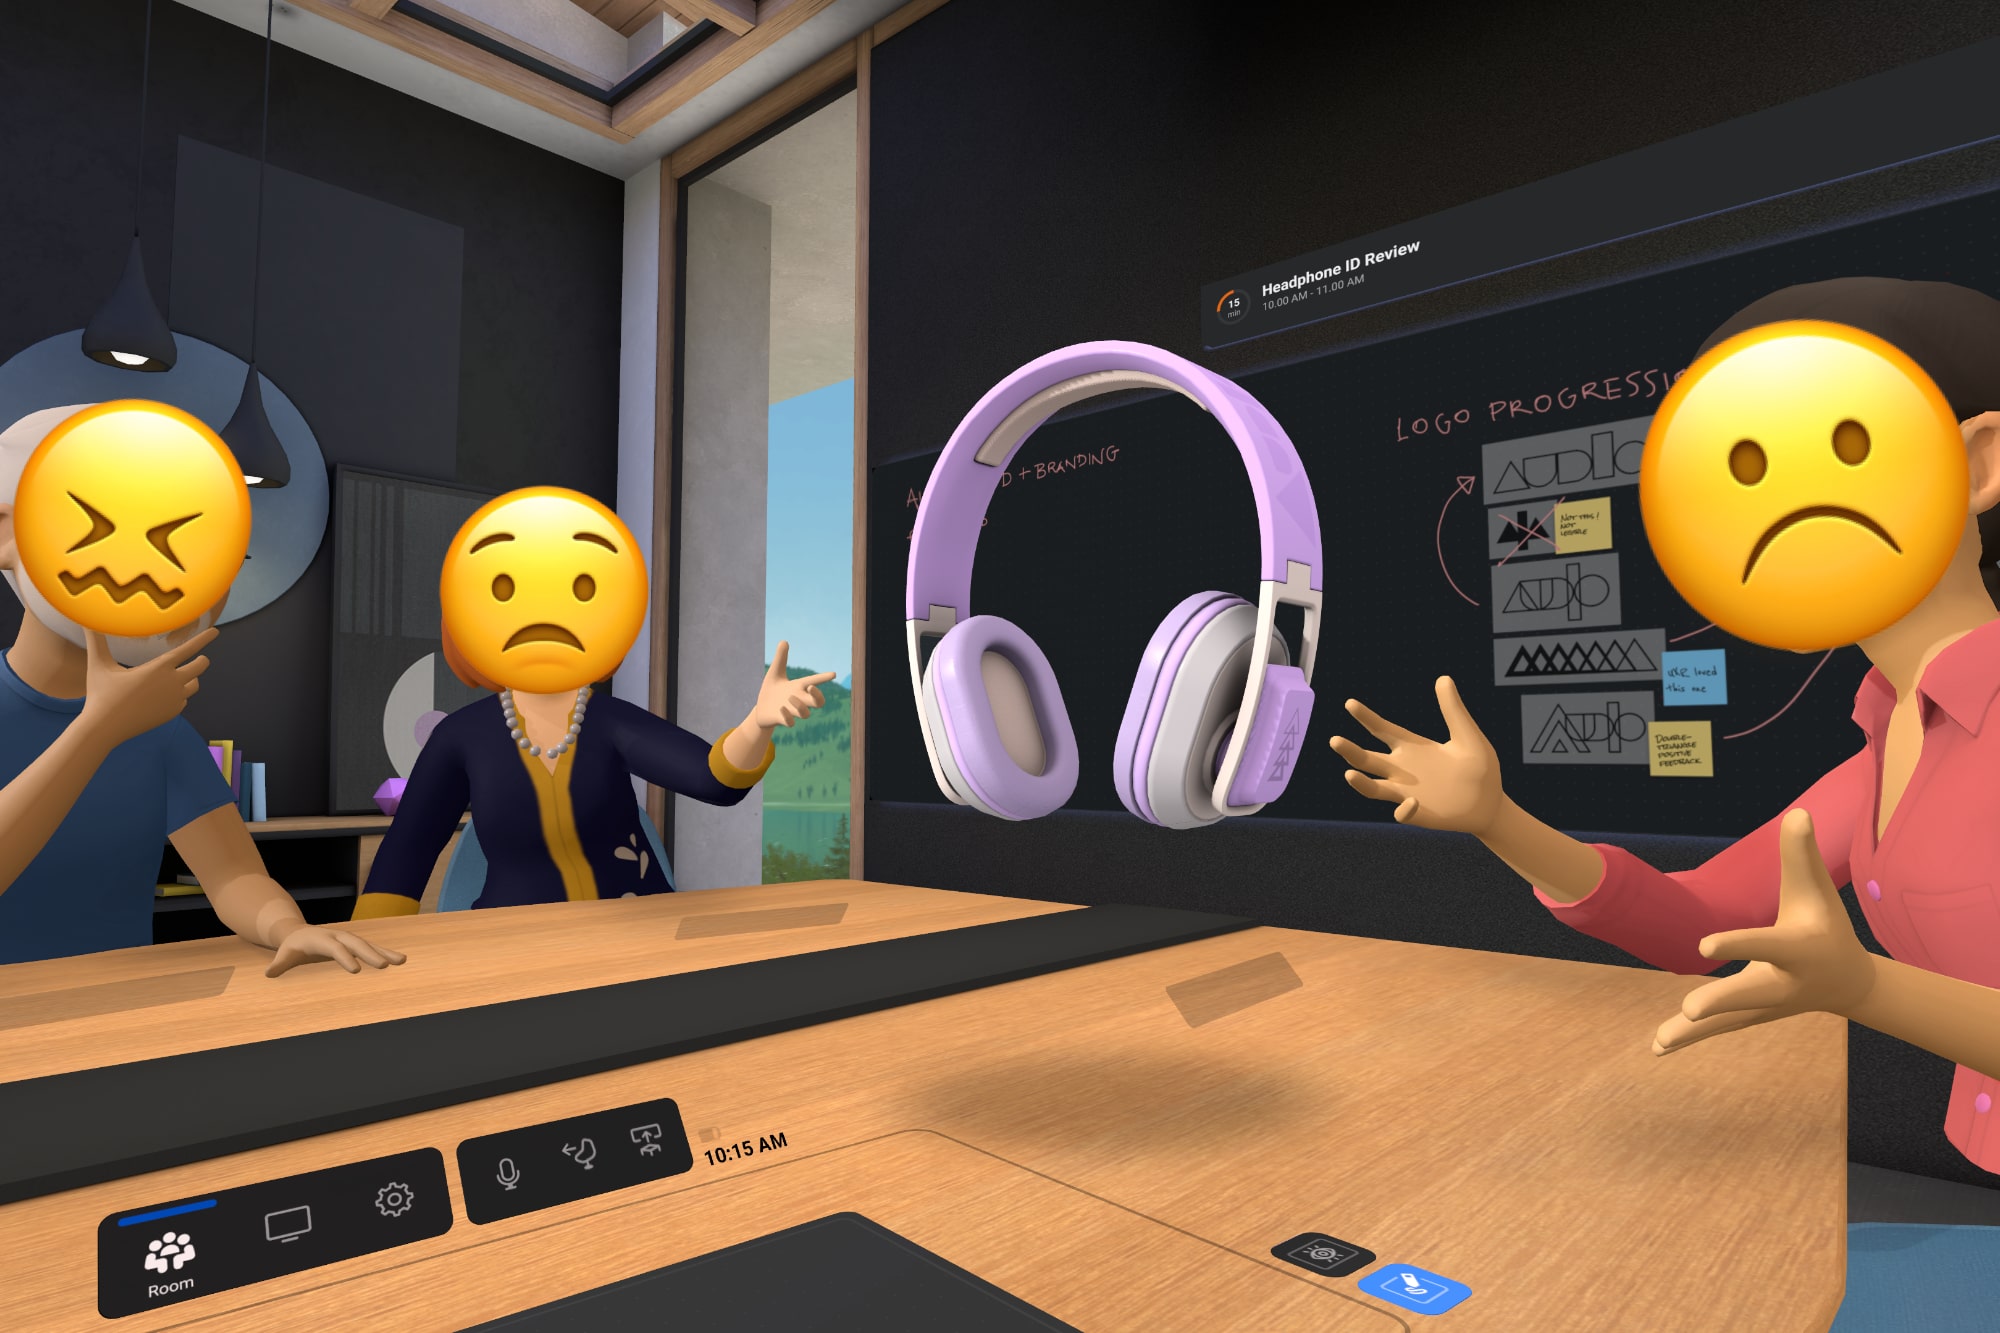 El ejemplo de Meta Quest Pro Horizon Workrooms ha sido alterado con emojis infelices sobre los avatares.